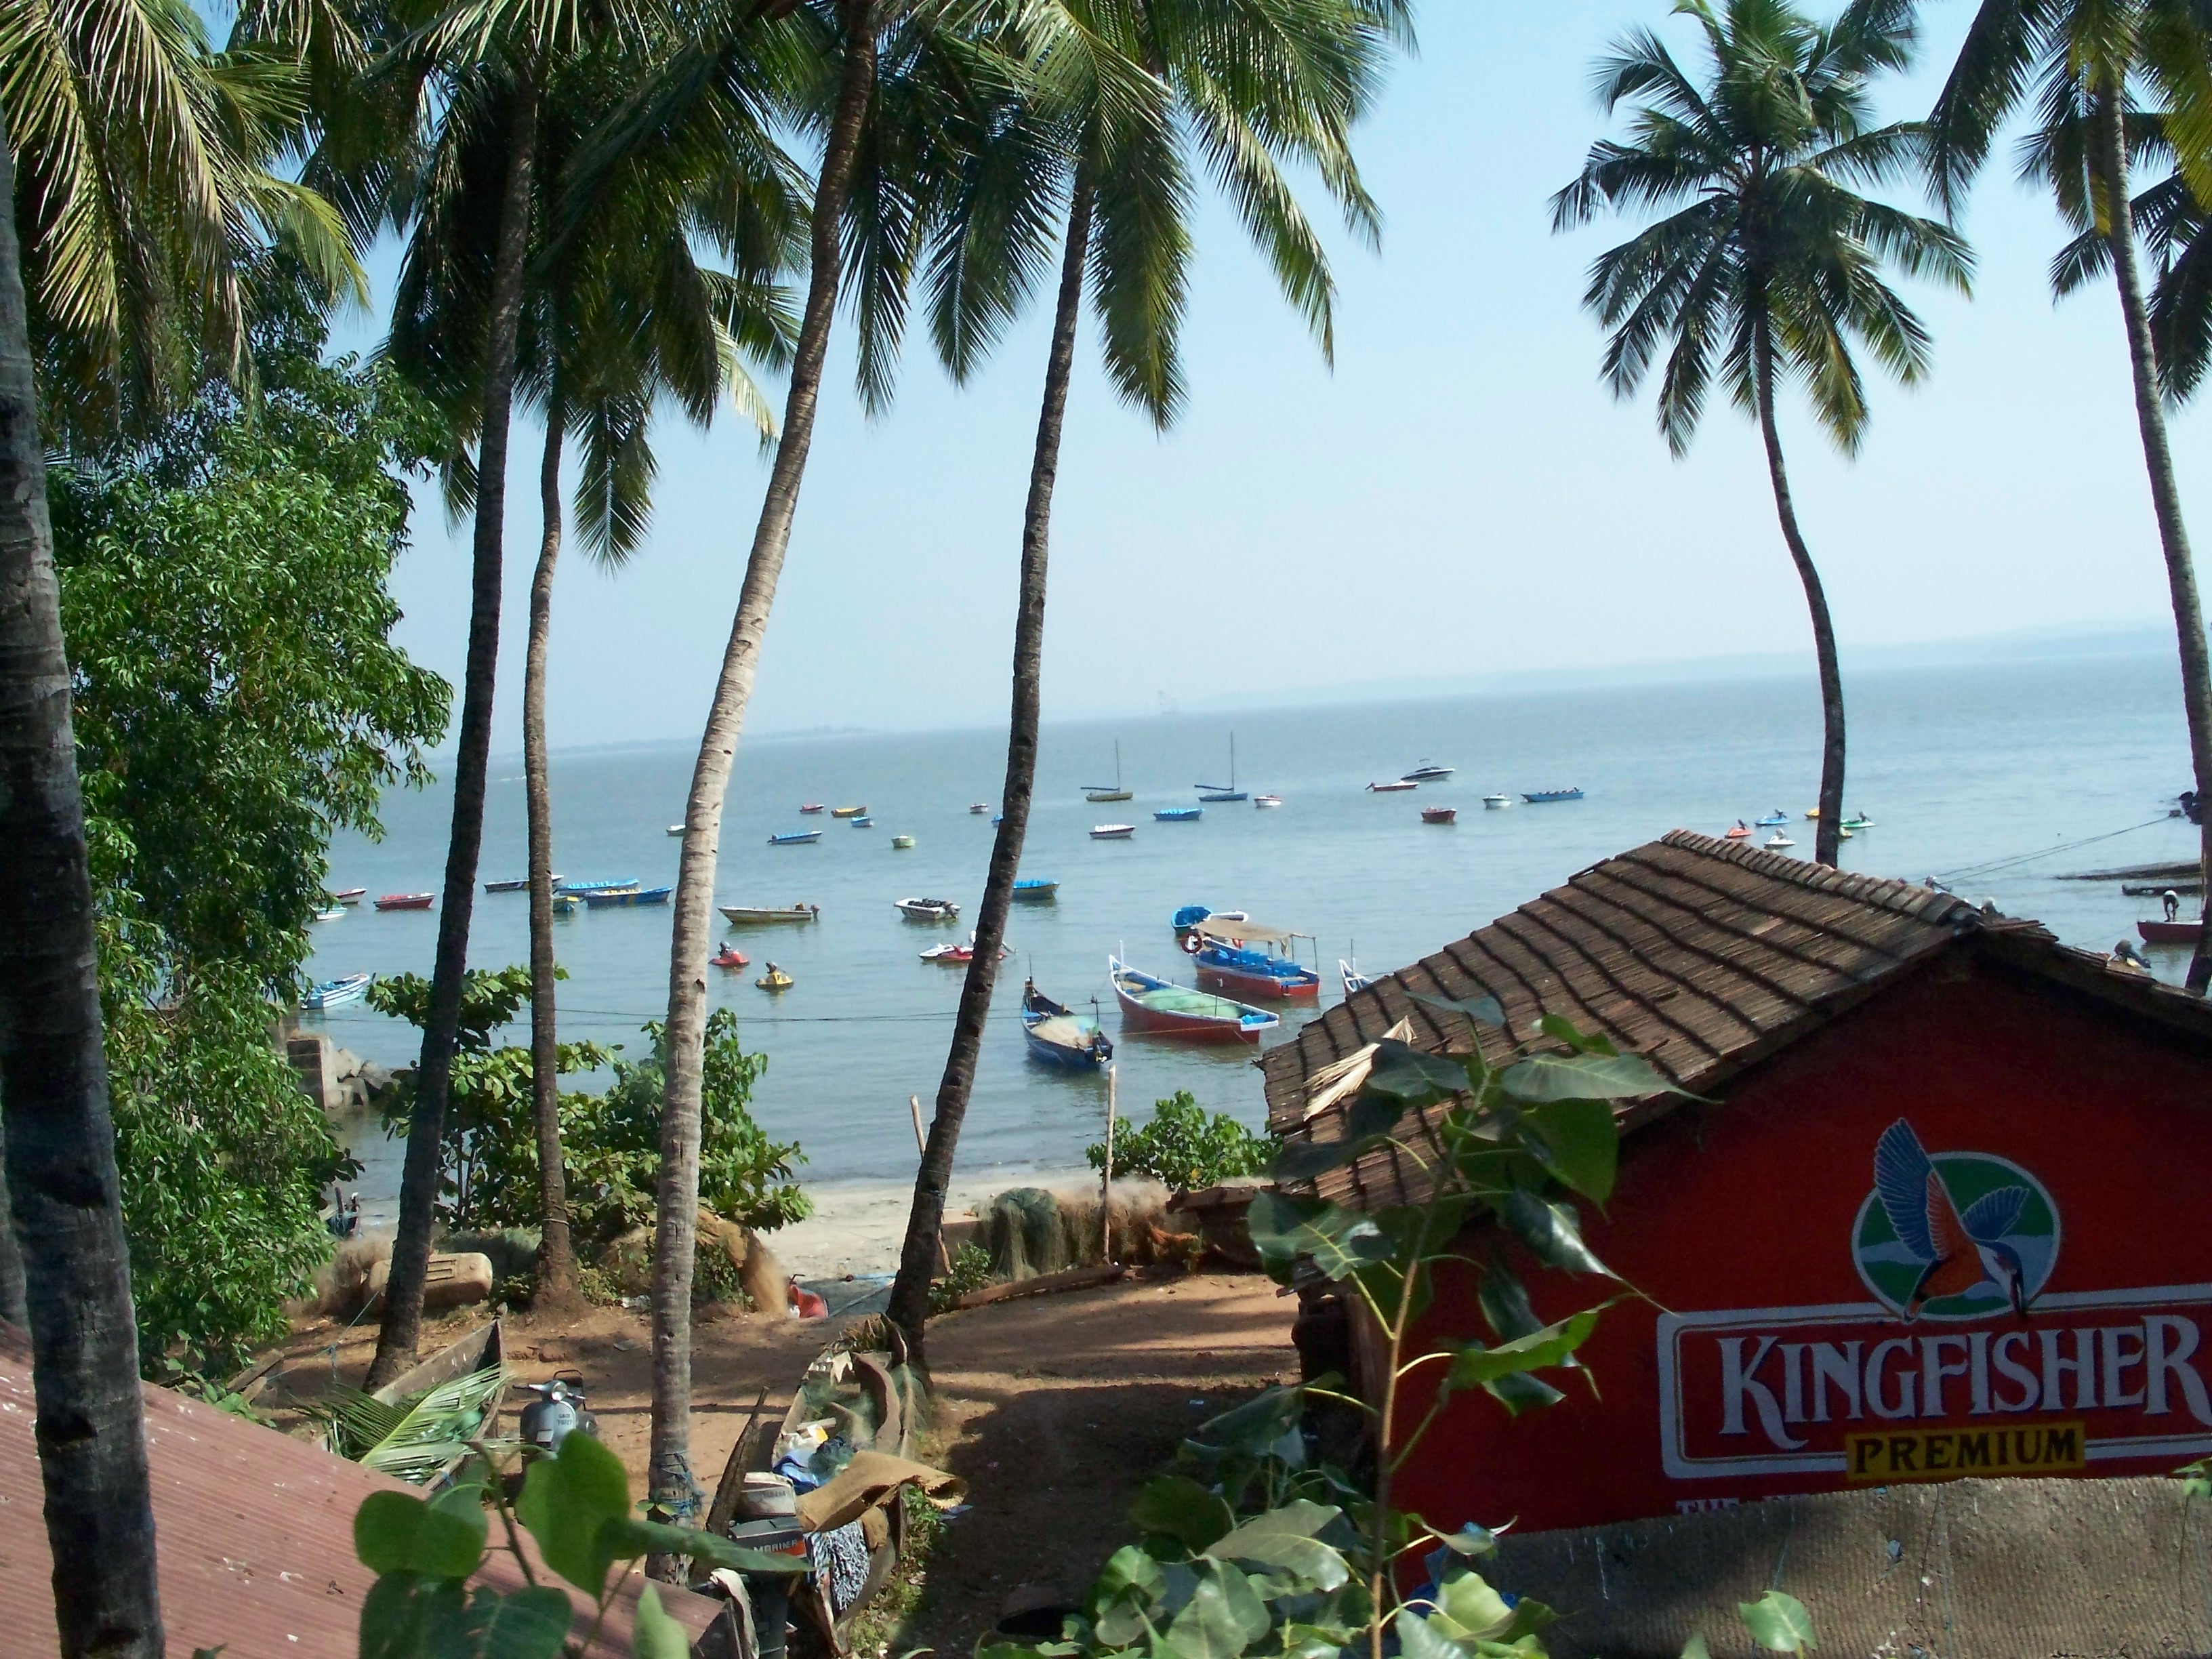 Kingfisher_beer_ad_in_Goa.jpg